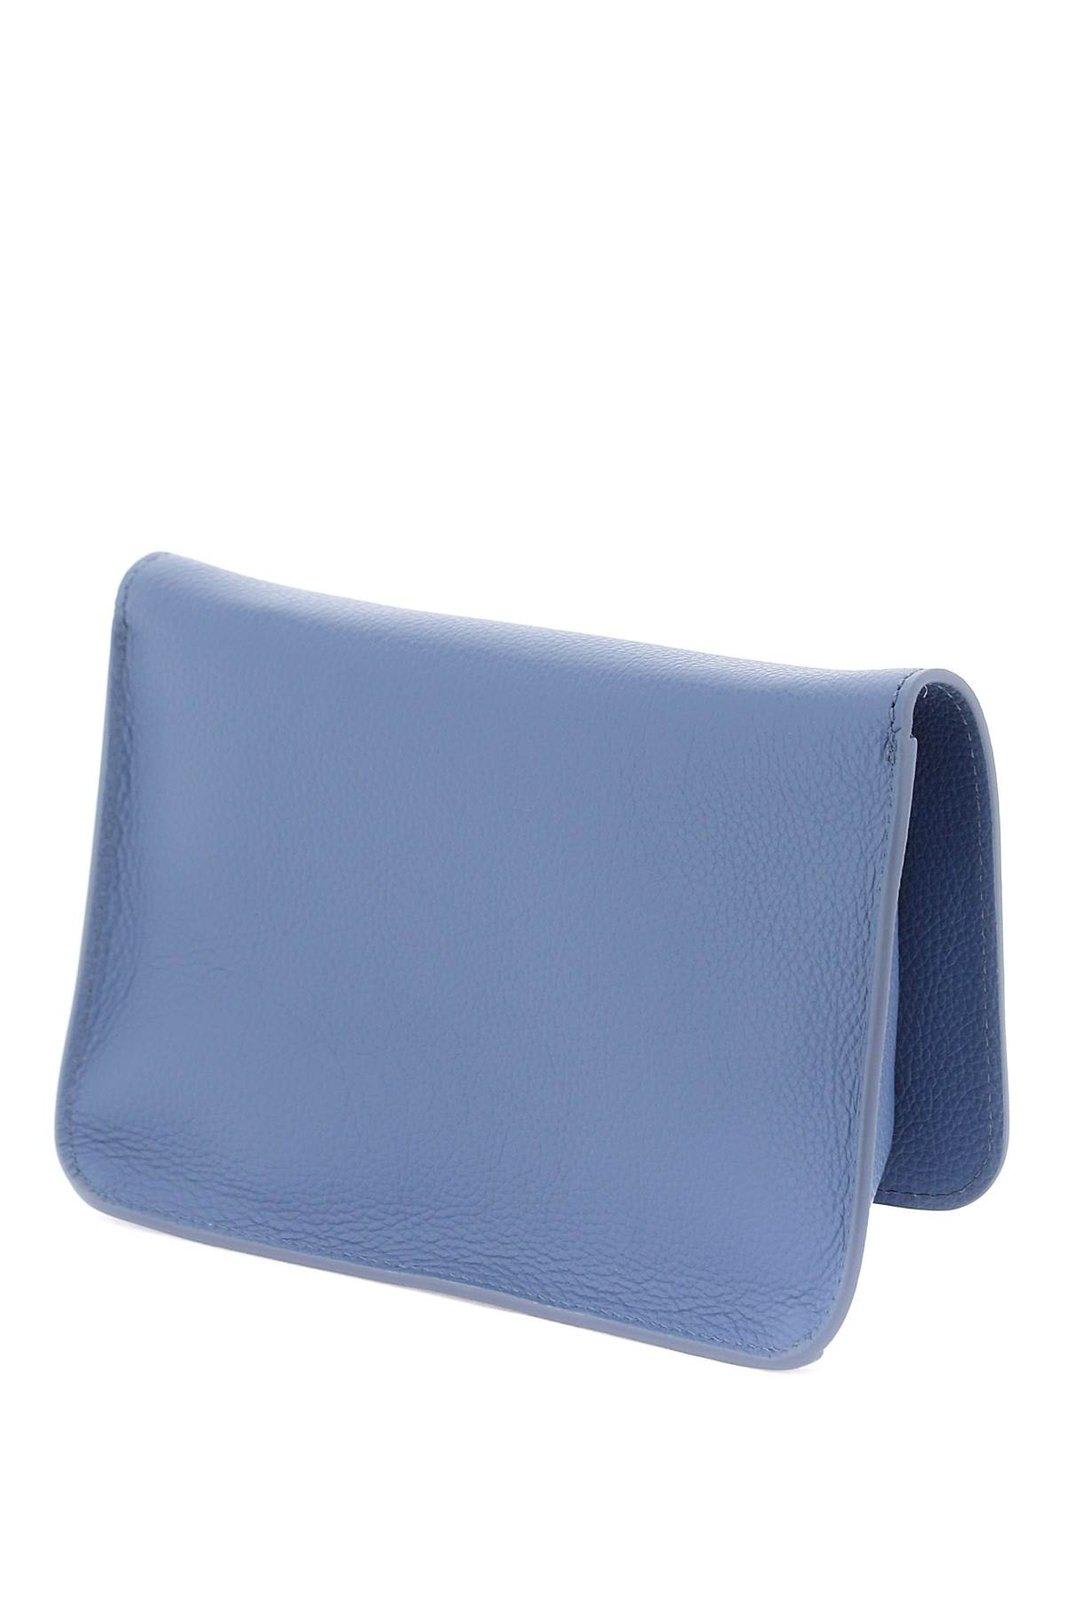 Shop Marni Logo Embroidered Foldover Top Shoulder Bag In Gnawed Blue